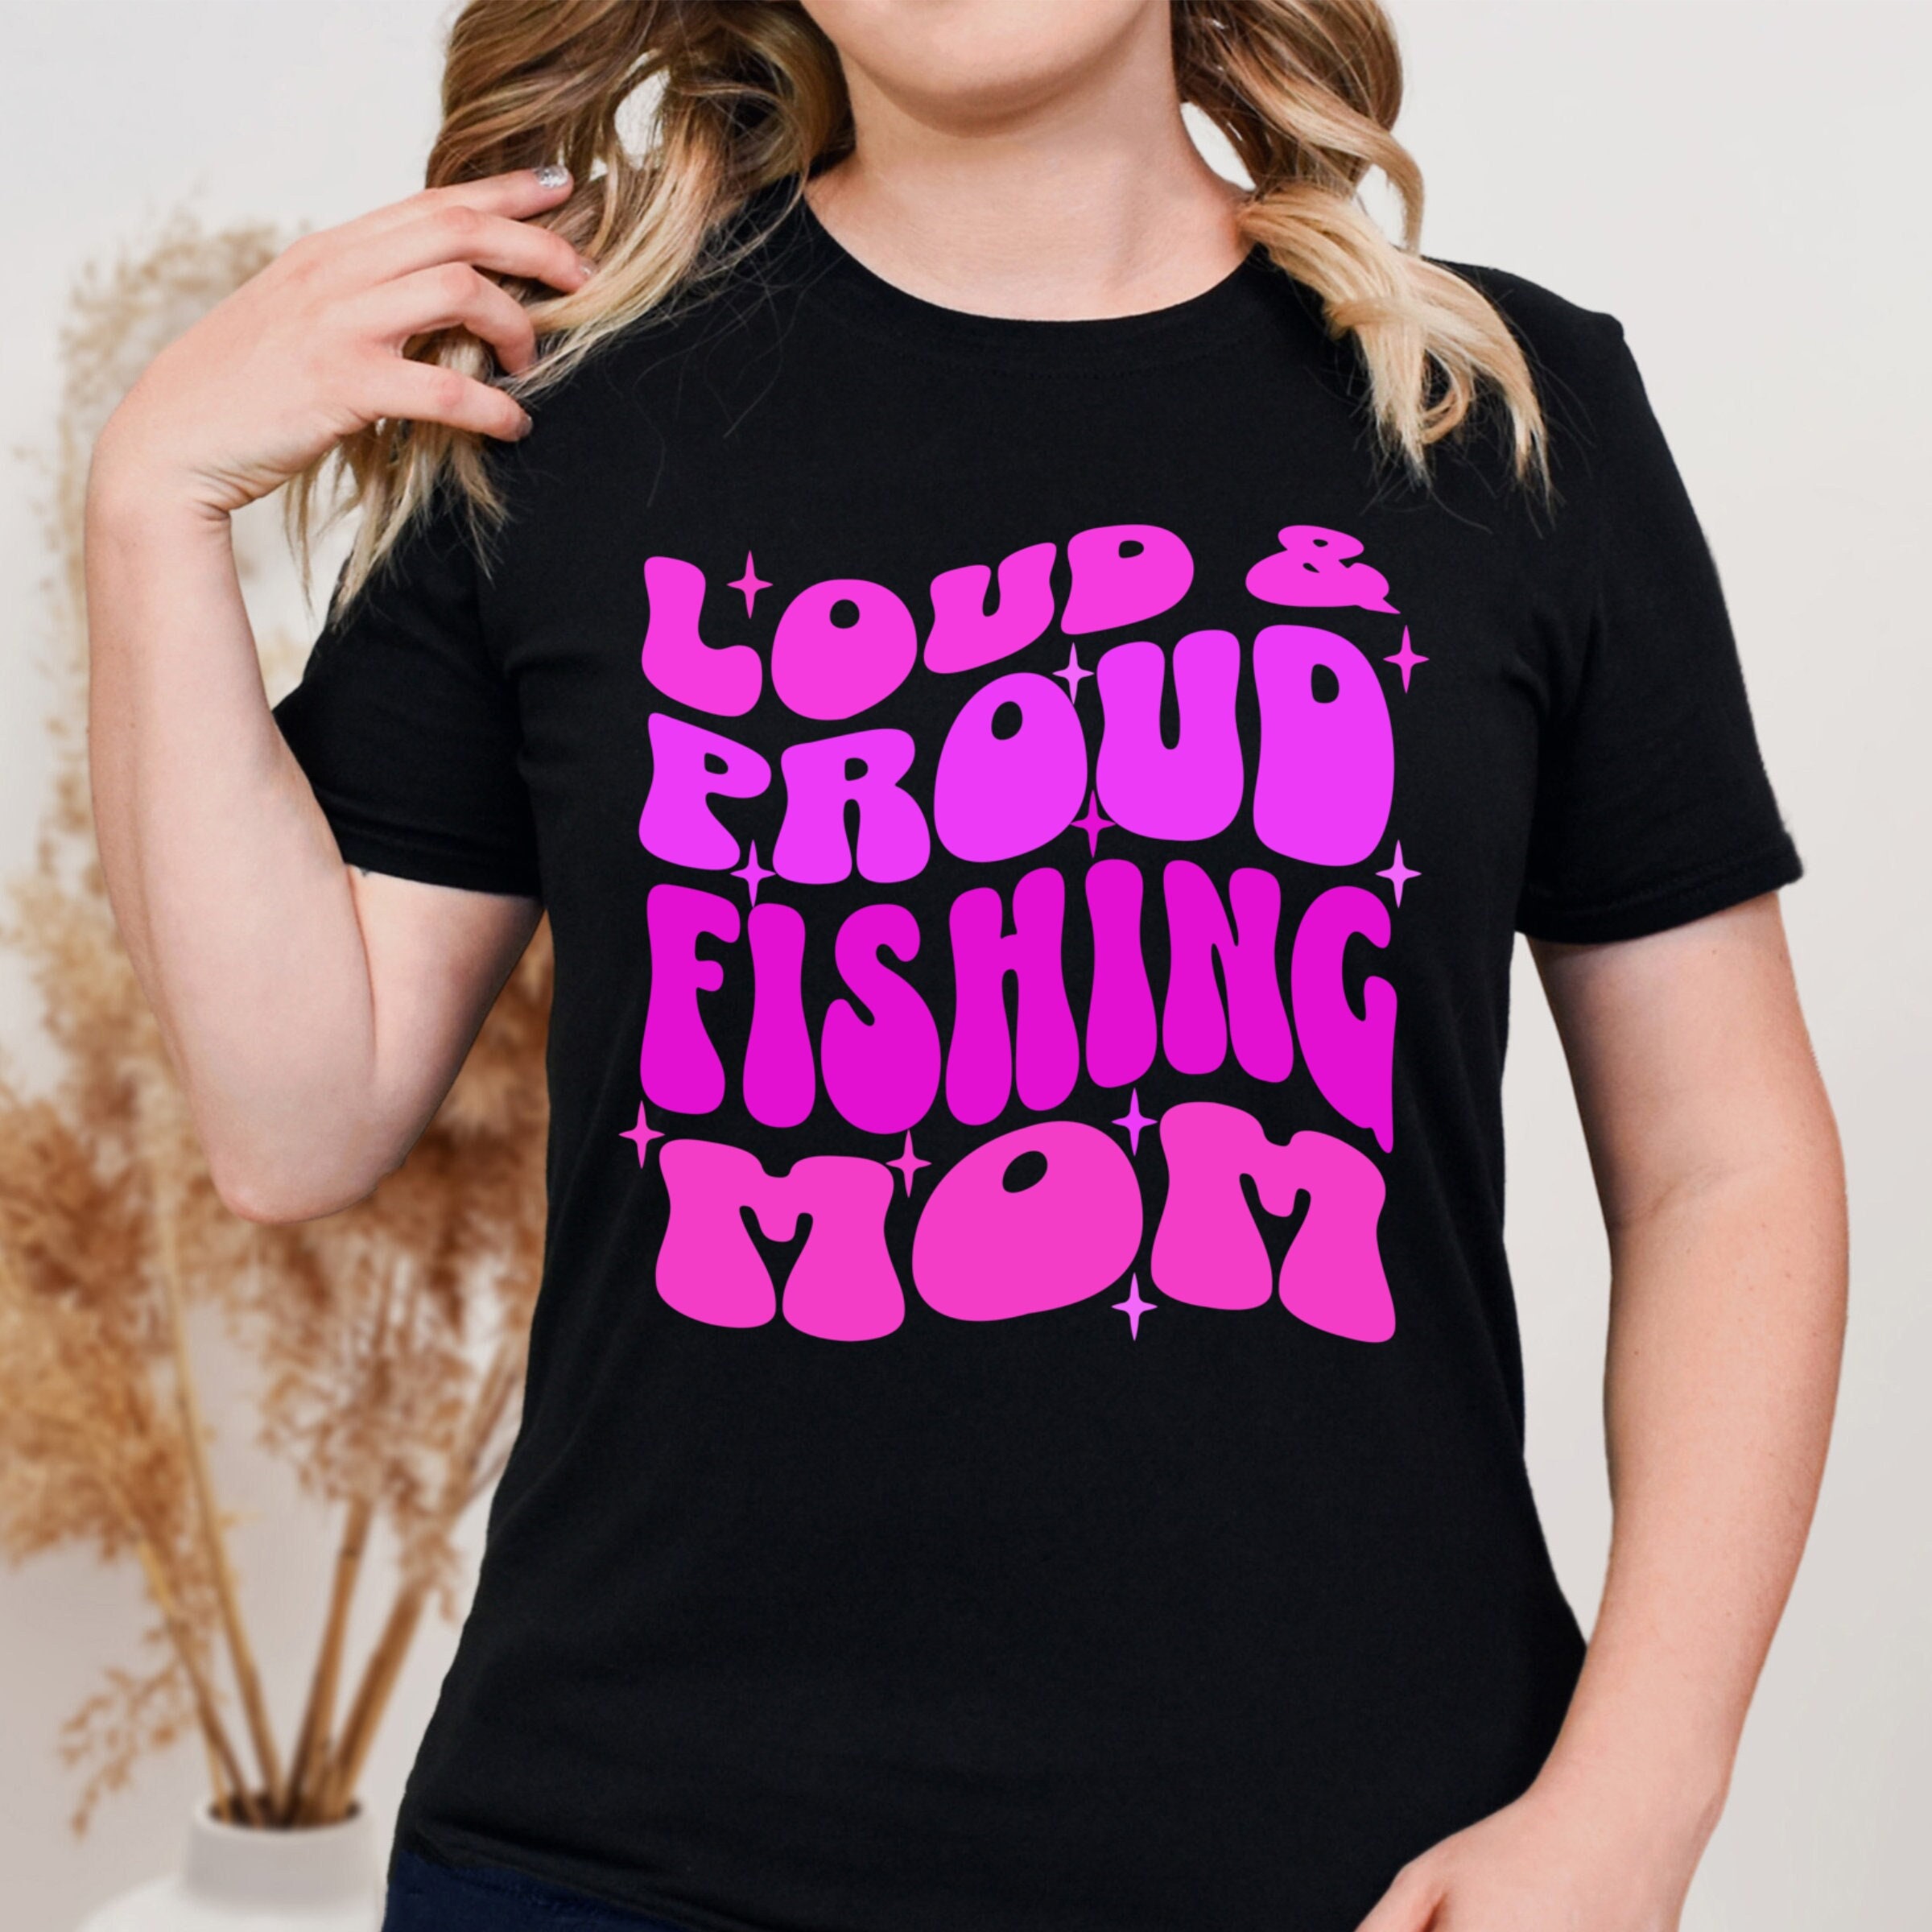 Fishing Shirt That FISH WAS so BIG Funny Fishing Tshirt Fly